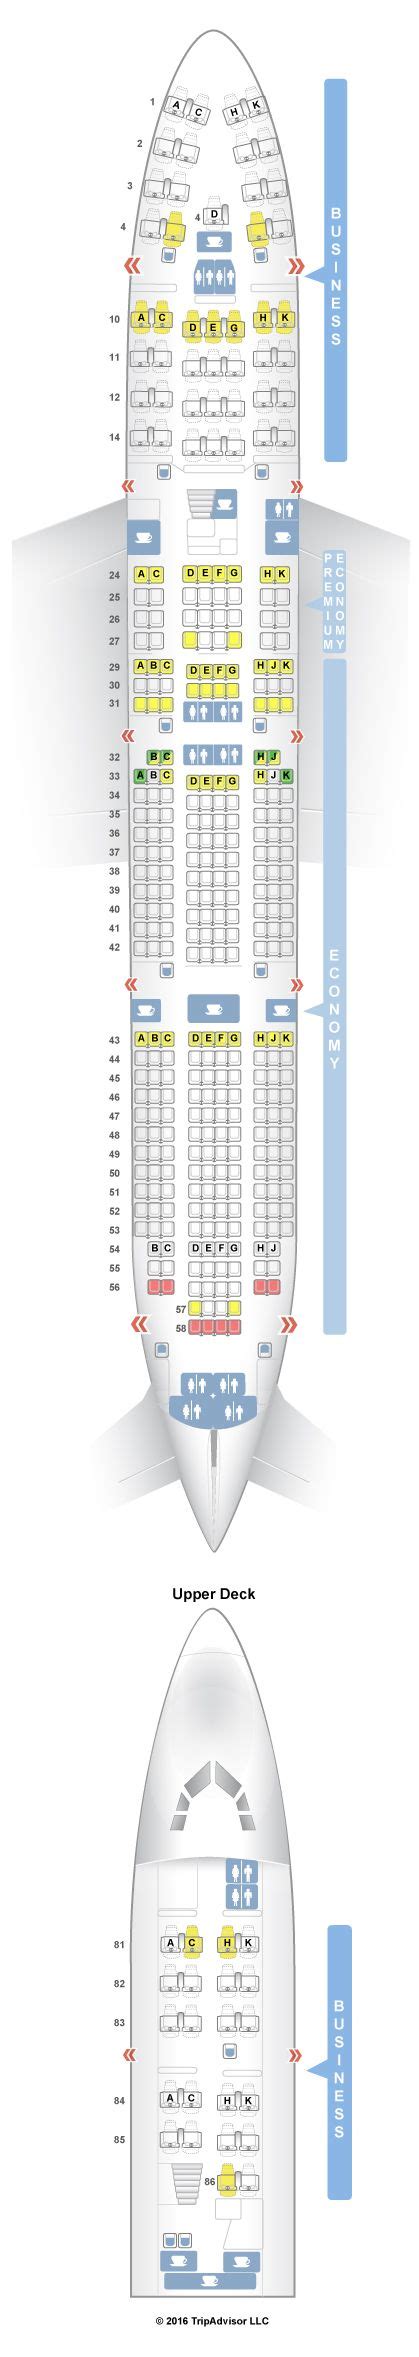 Seatguru Seat Map Lufthansa Boeing 747 400 744 V2 Boeing 747 400